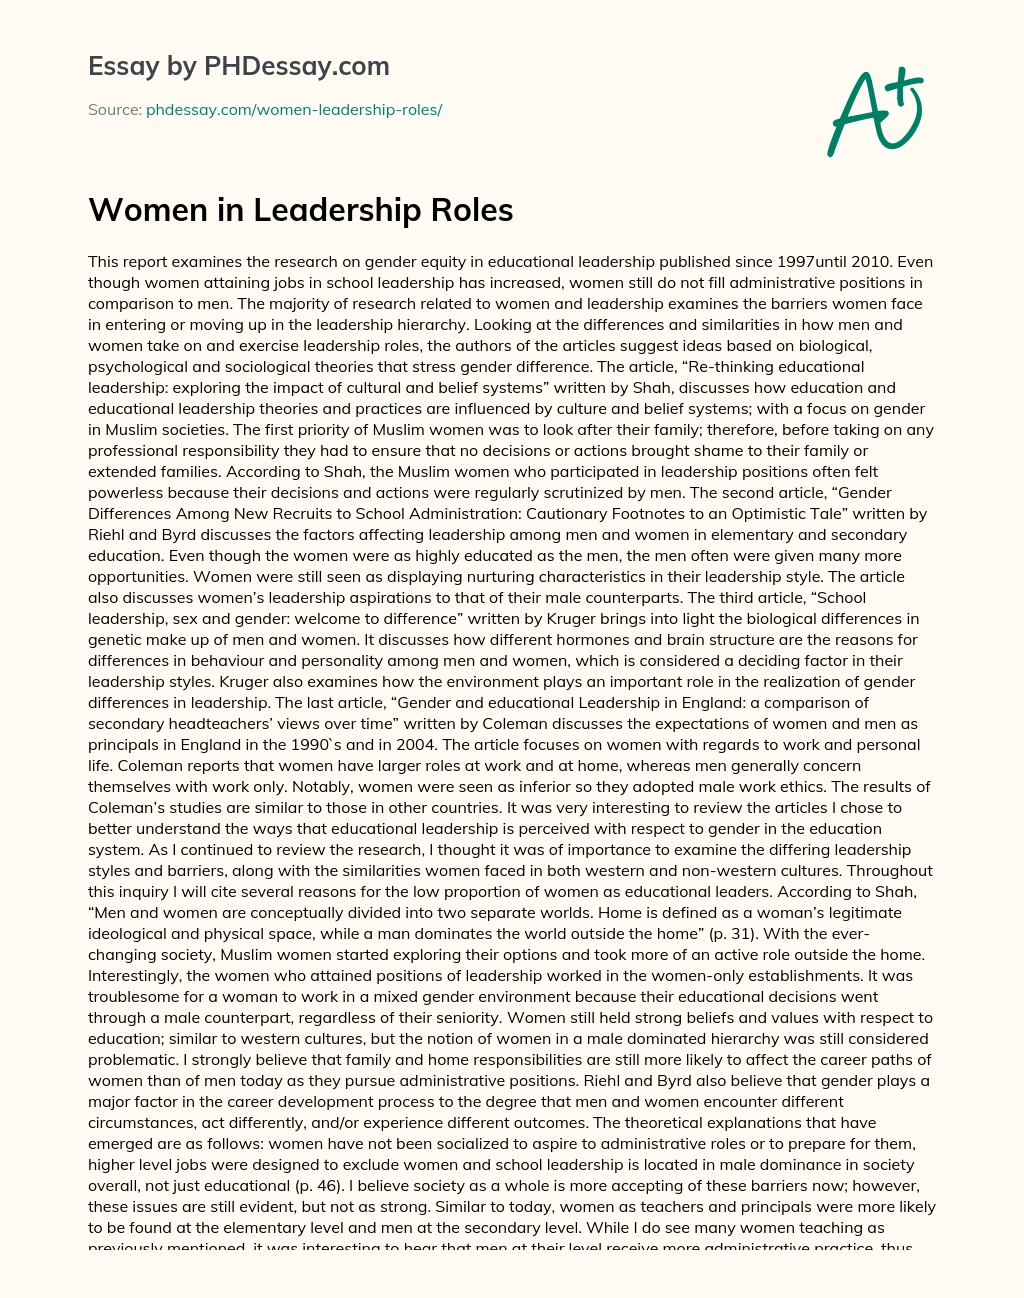 Women in Leadership Roles essay